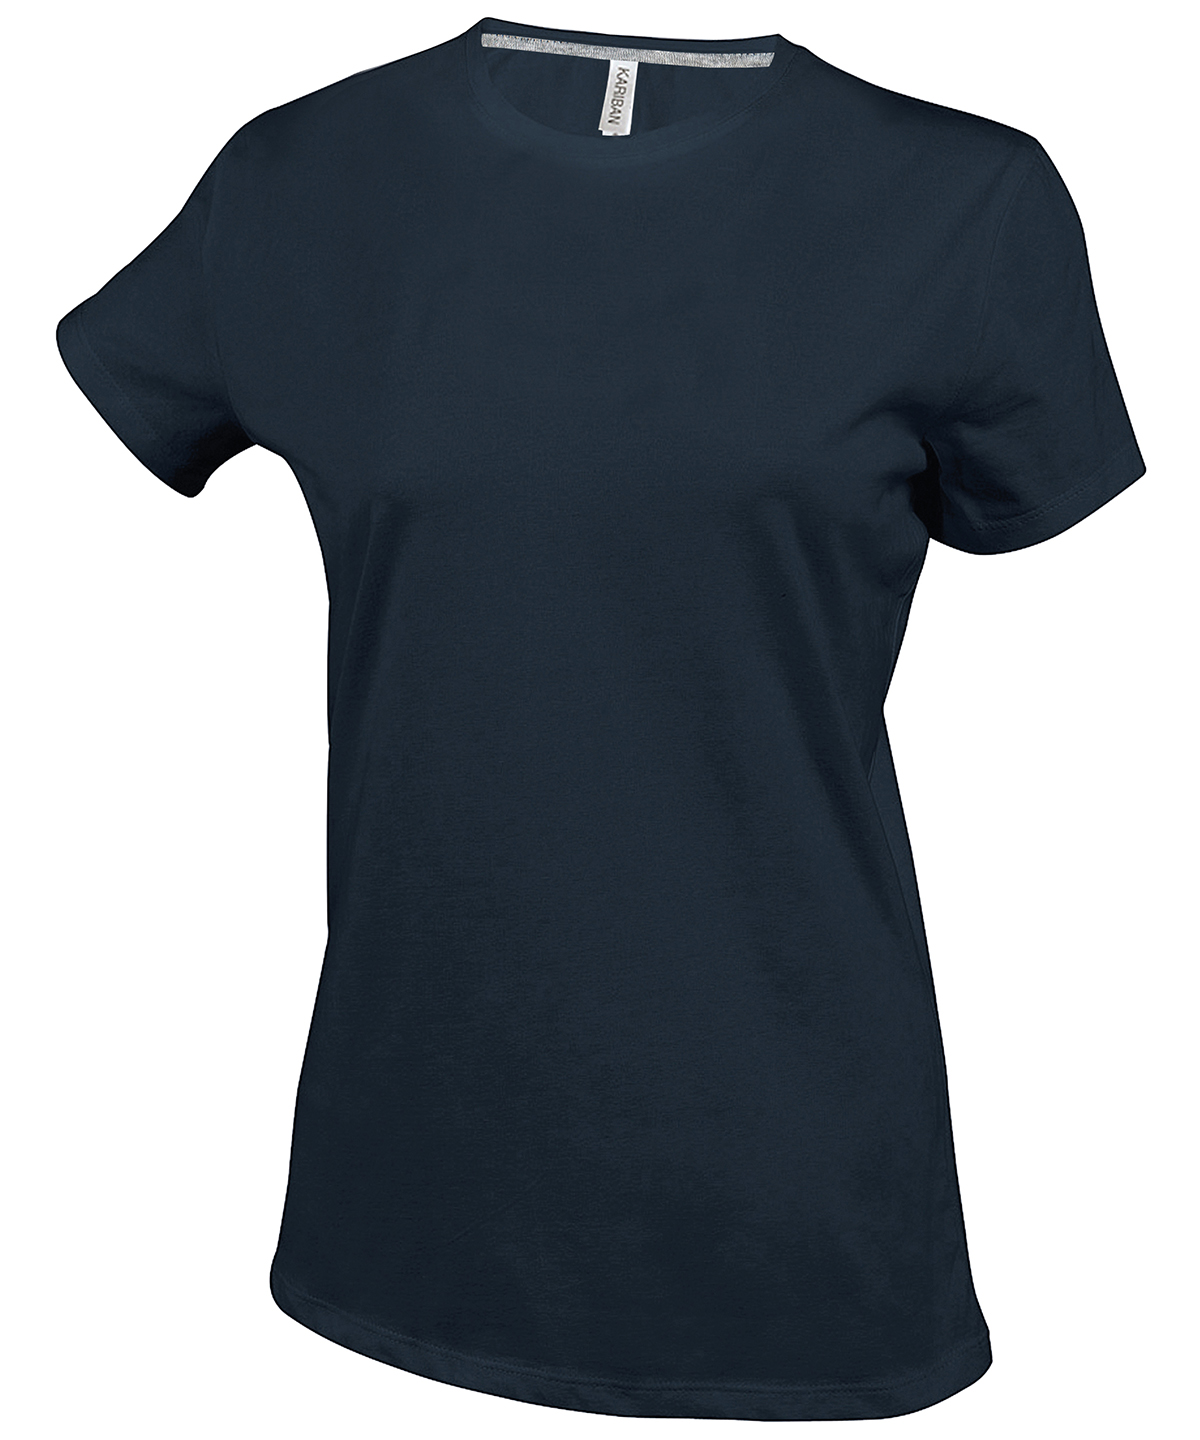 Women's short sleeve crew neck t-shirt